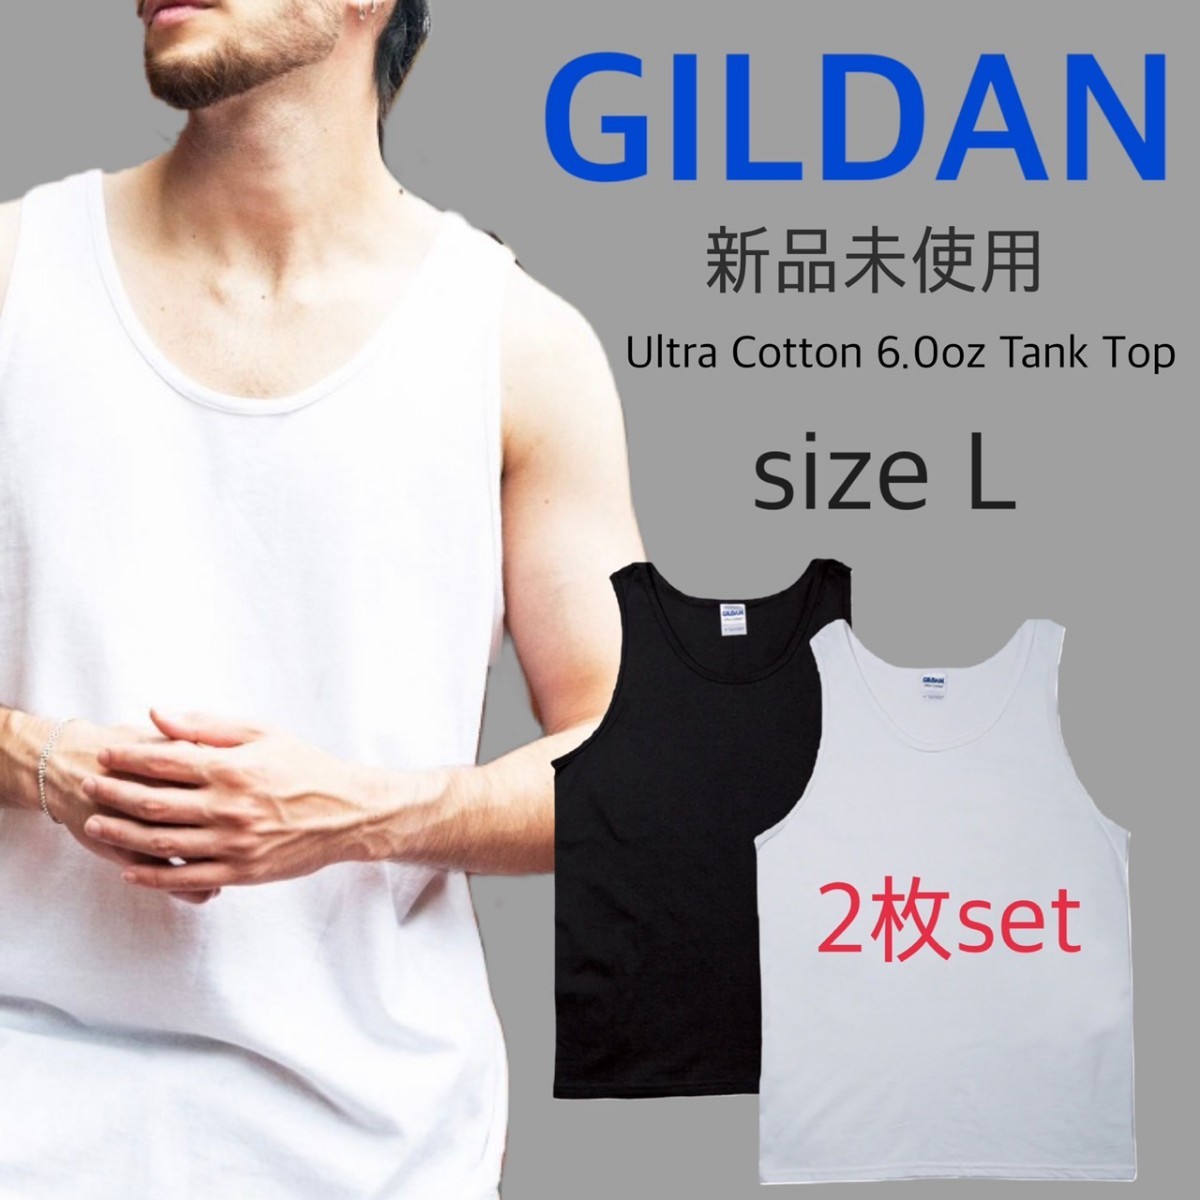  new goods giru Dan Ultra cotton plain tank top white black 2 pieces set L size white black GILDAN 2200